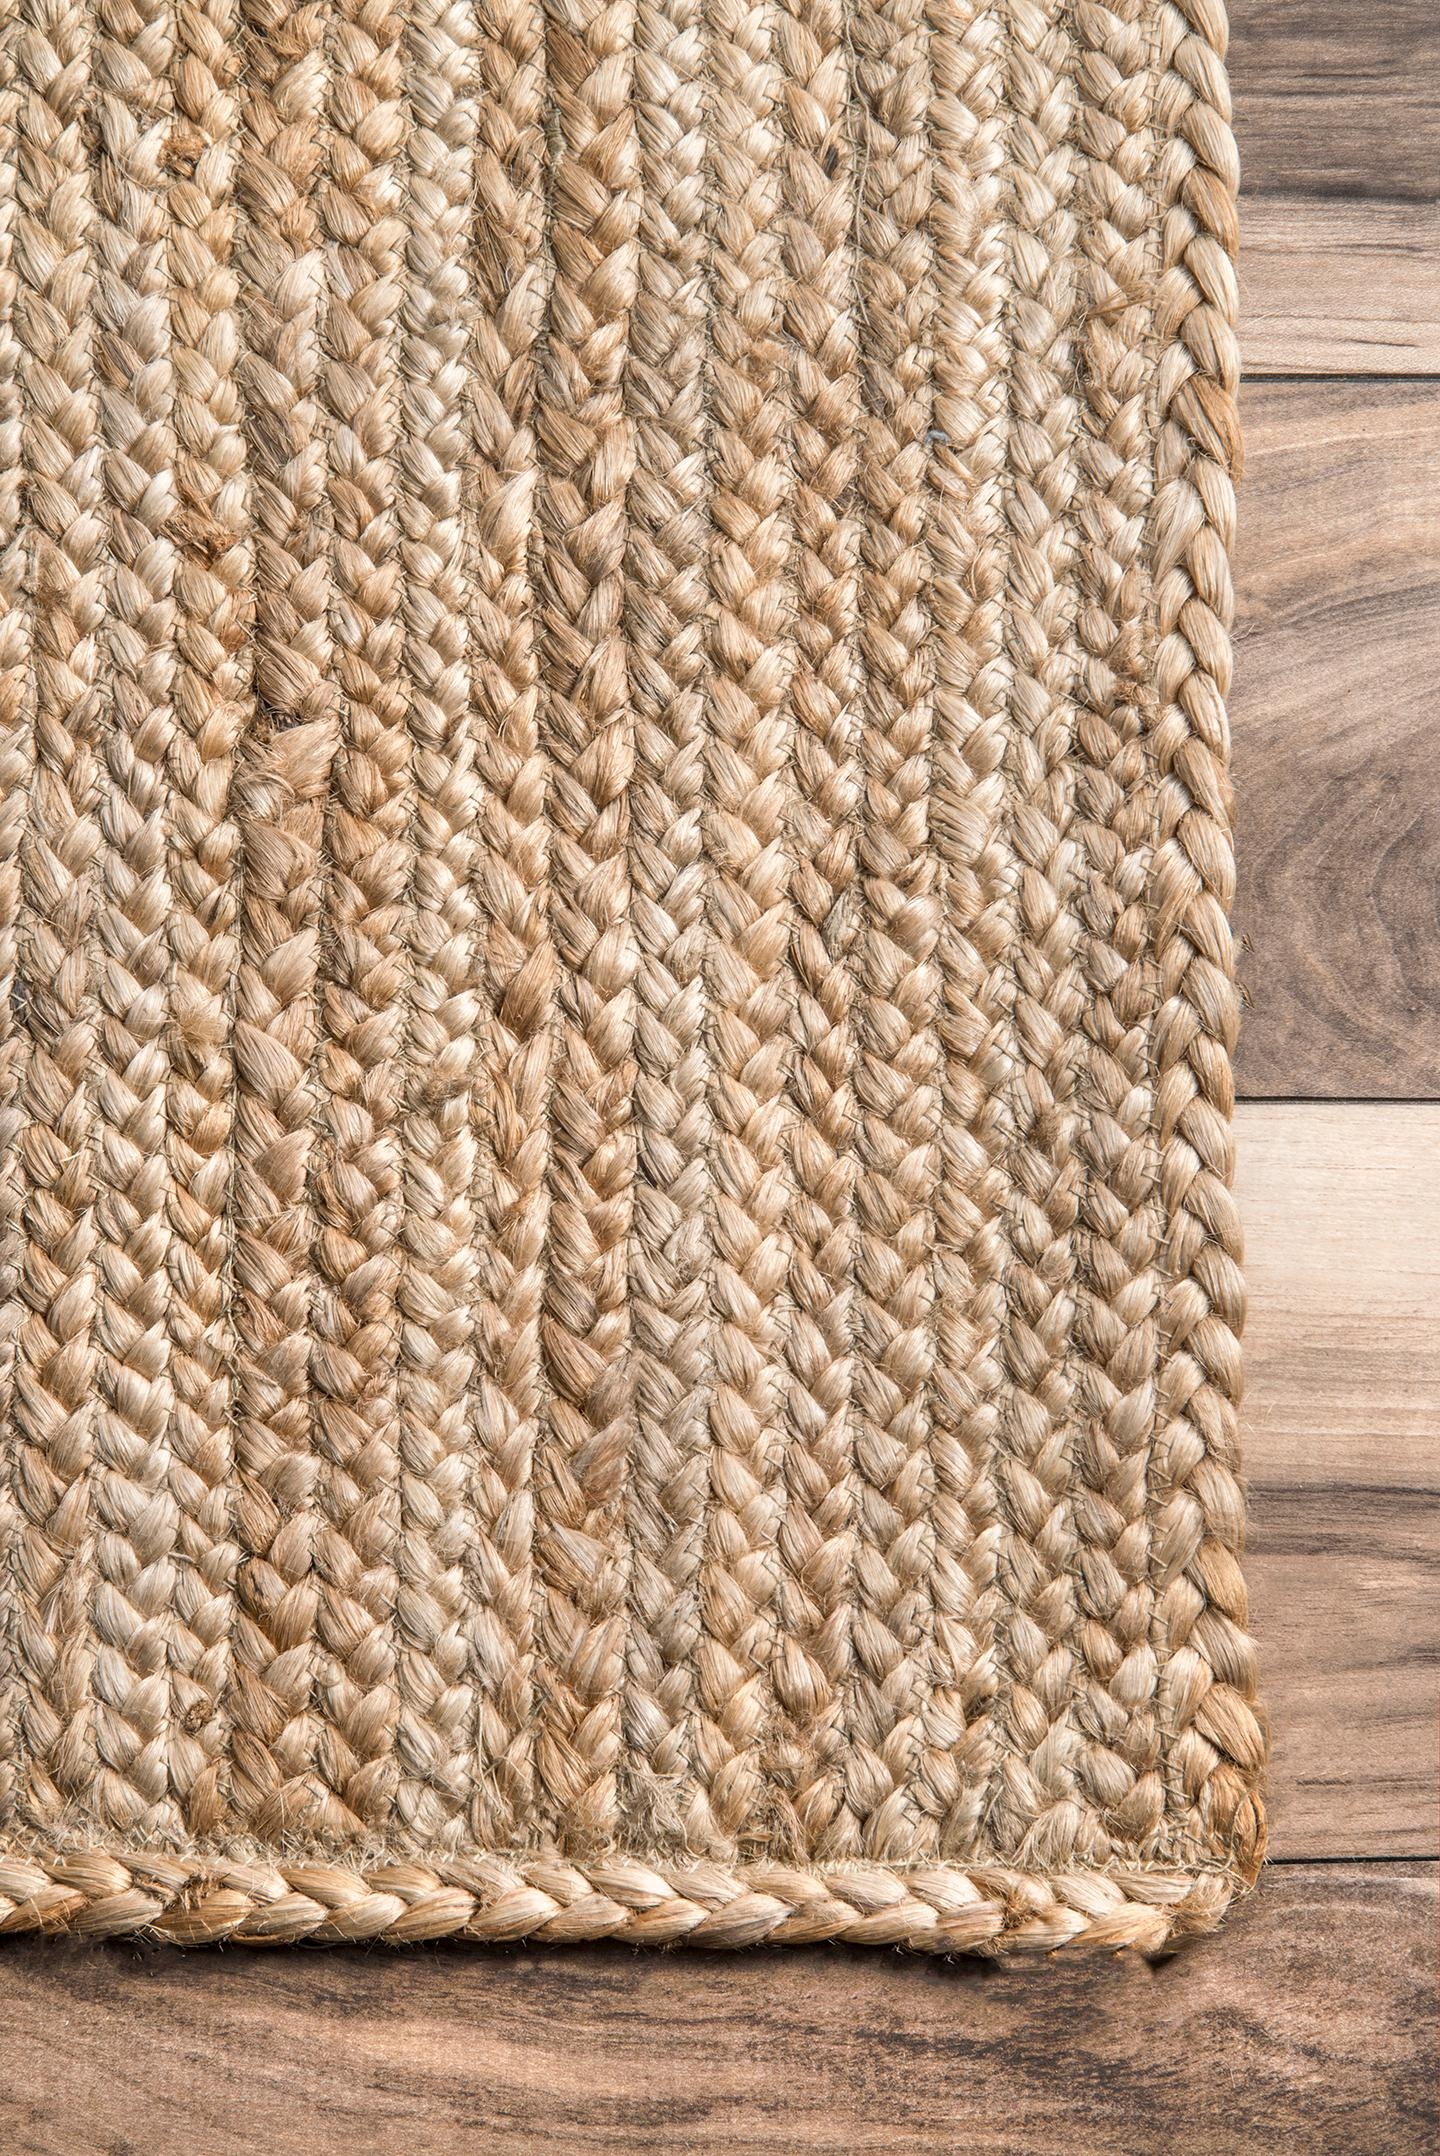 Hand Woven Rigo Jute rug Area Rug, 10' x 14', Tan - Image 2